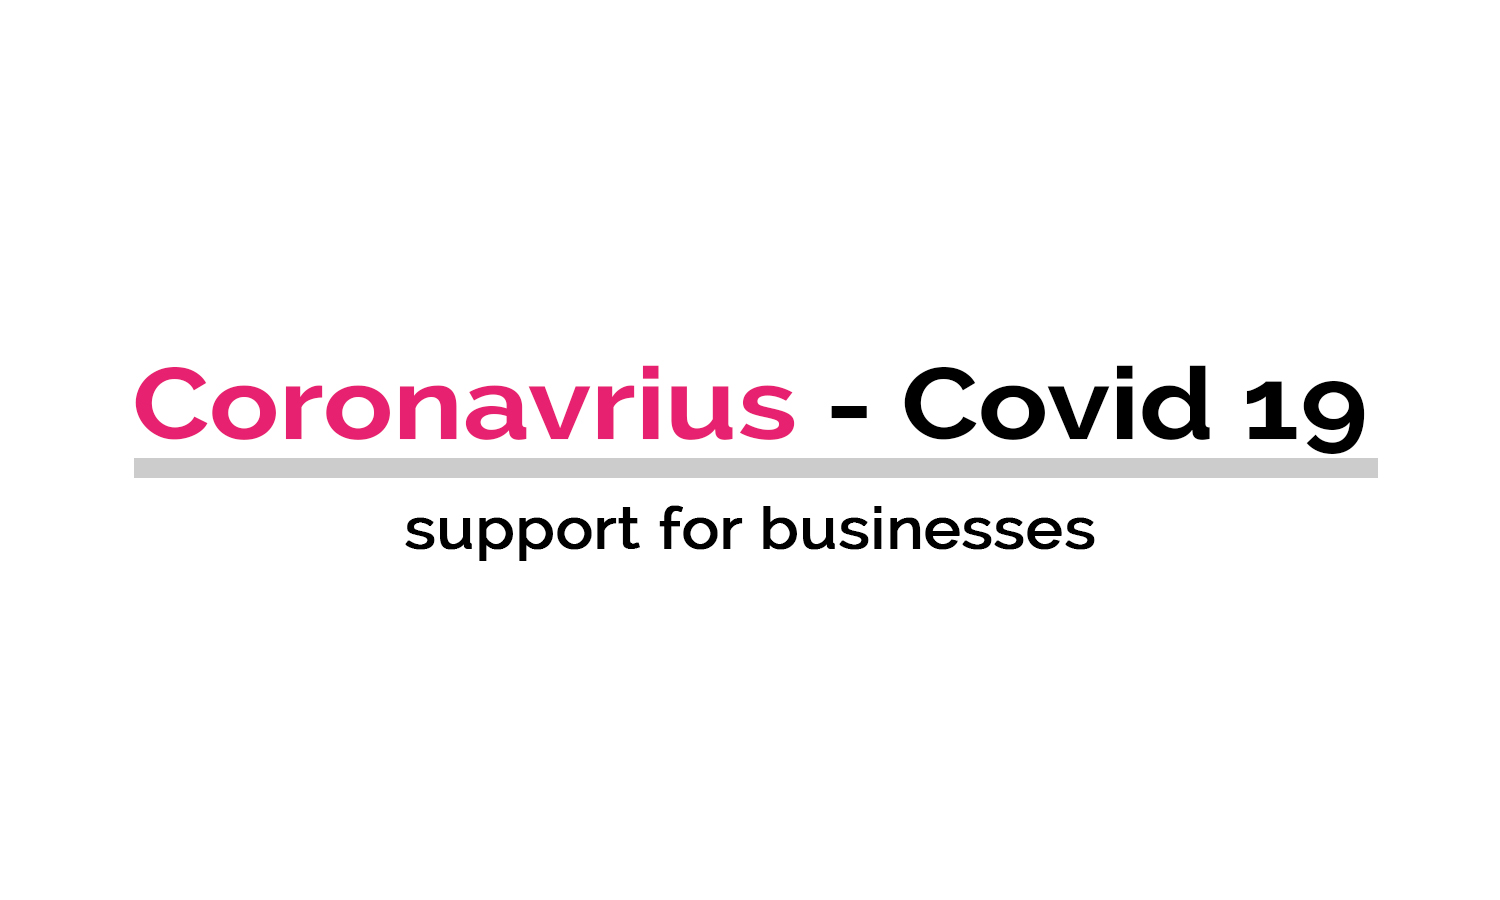 Coronavirus - Support for businesses